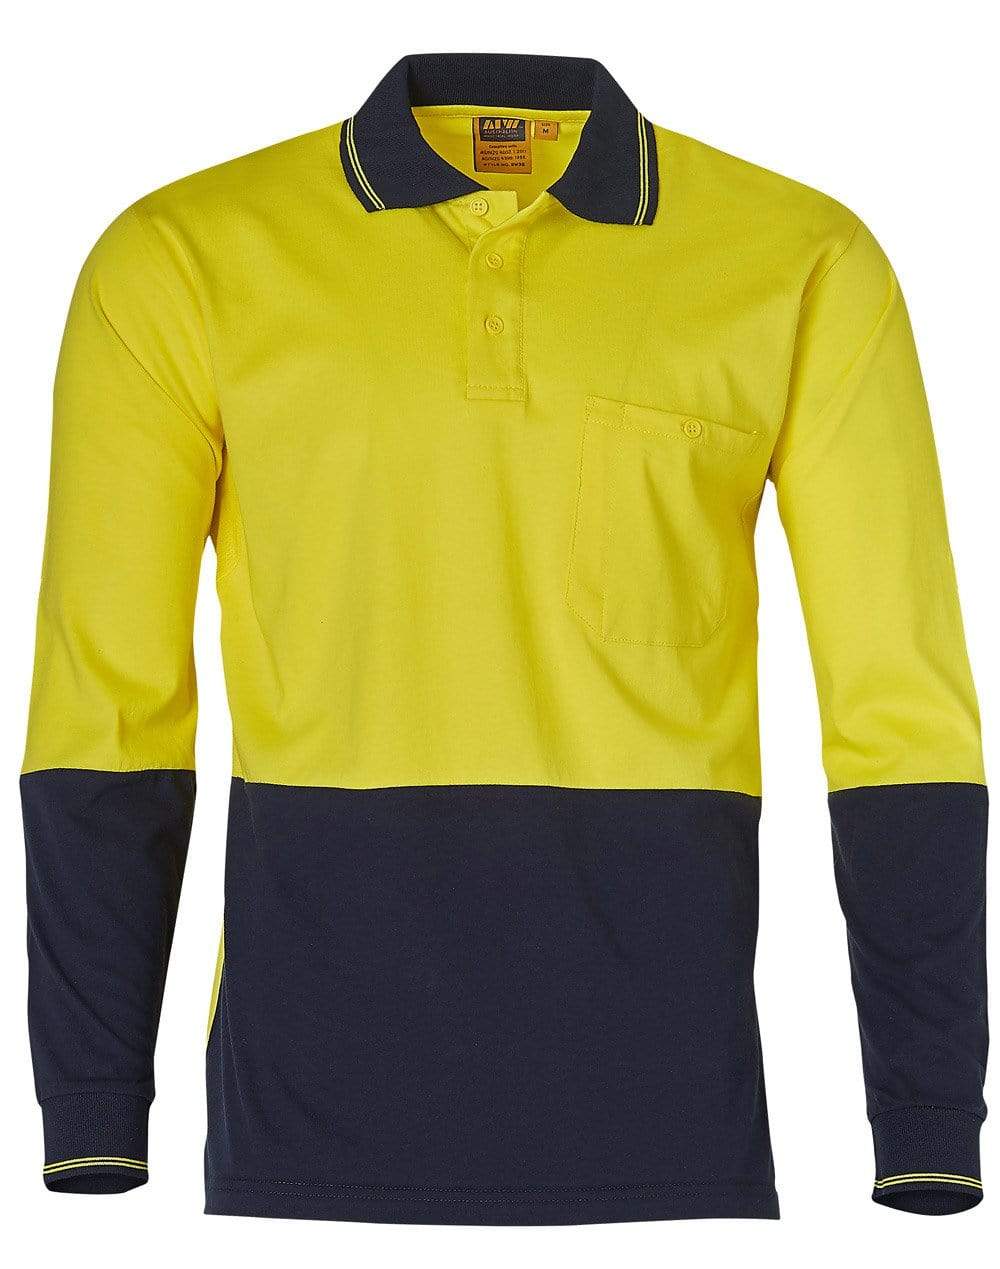 Cotton Jersey two tone Long Sleeve Safety Polo SW36 Work Wear Australian Industrial Wear S Fluoro Yellow/Navy 